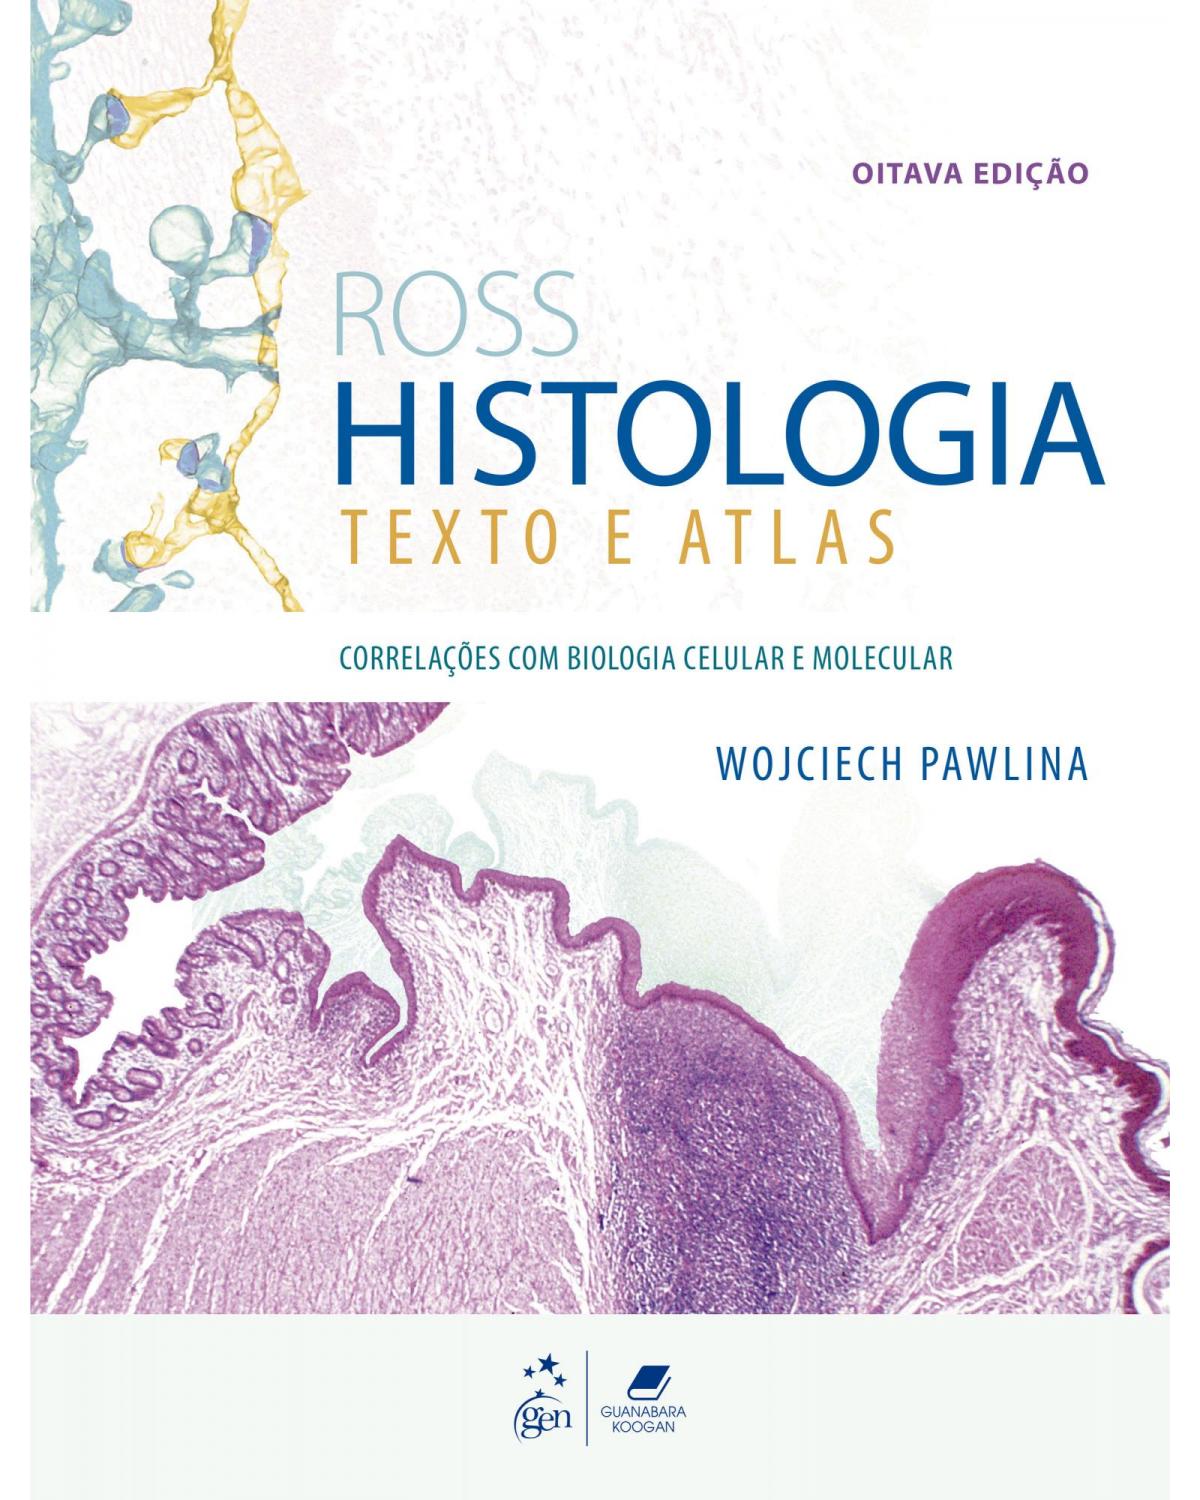 Ross histologia - Texto e atlas - 8ª Edição | 2021